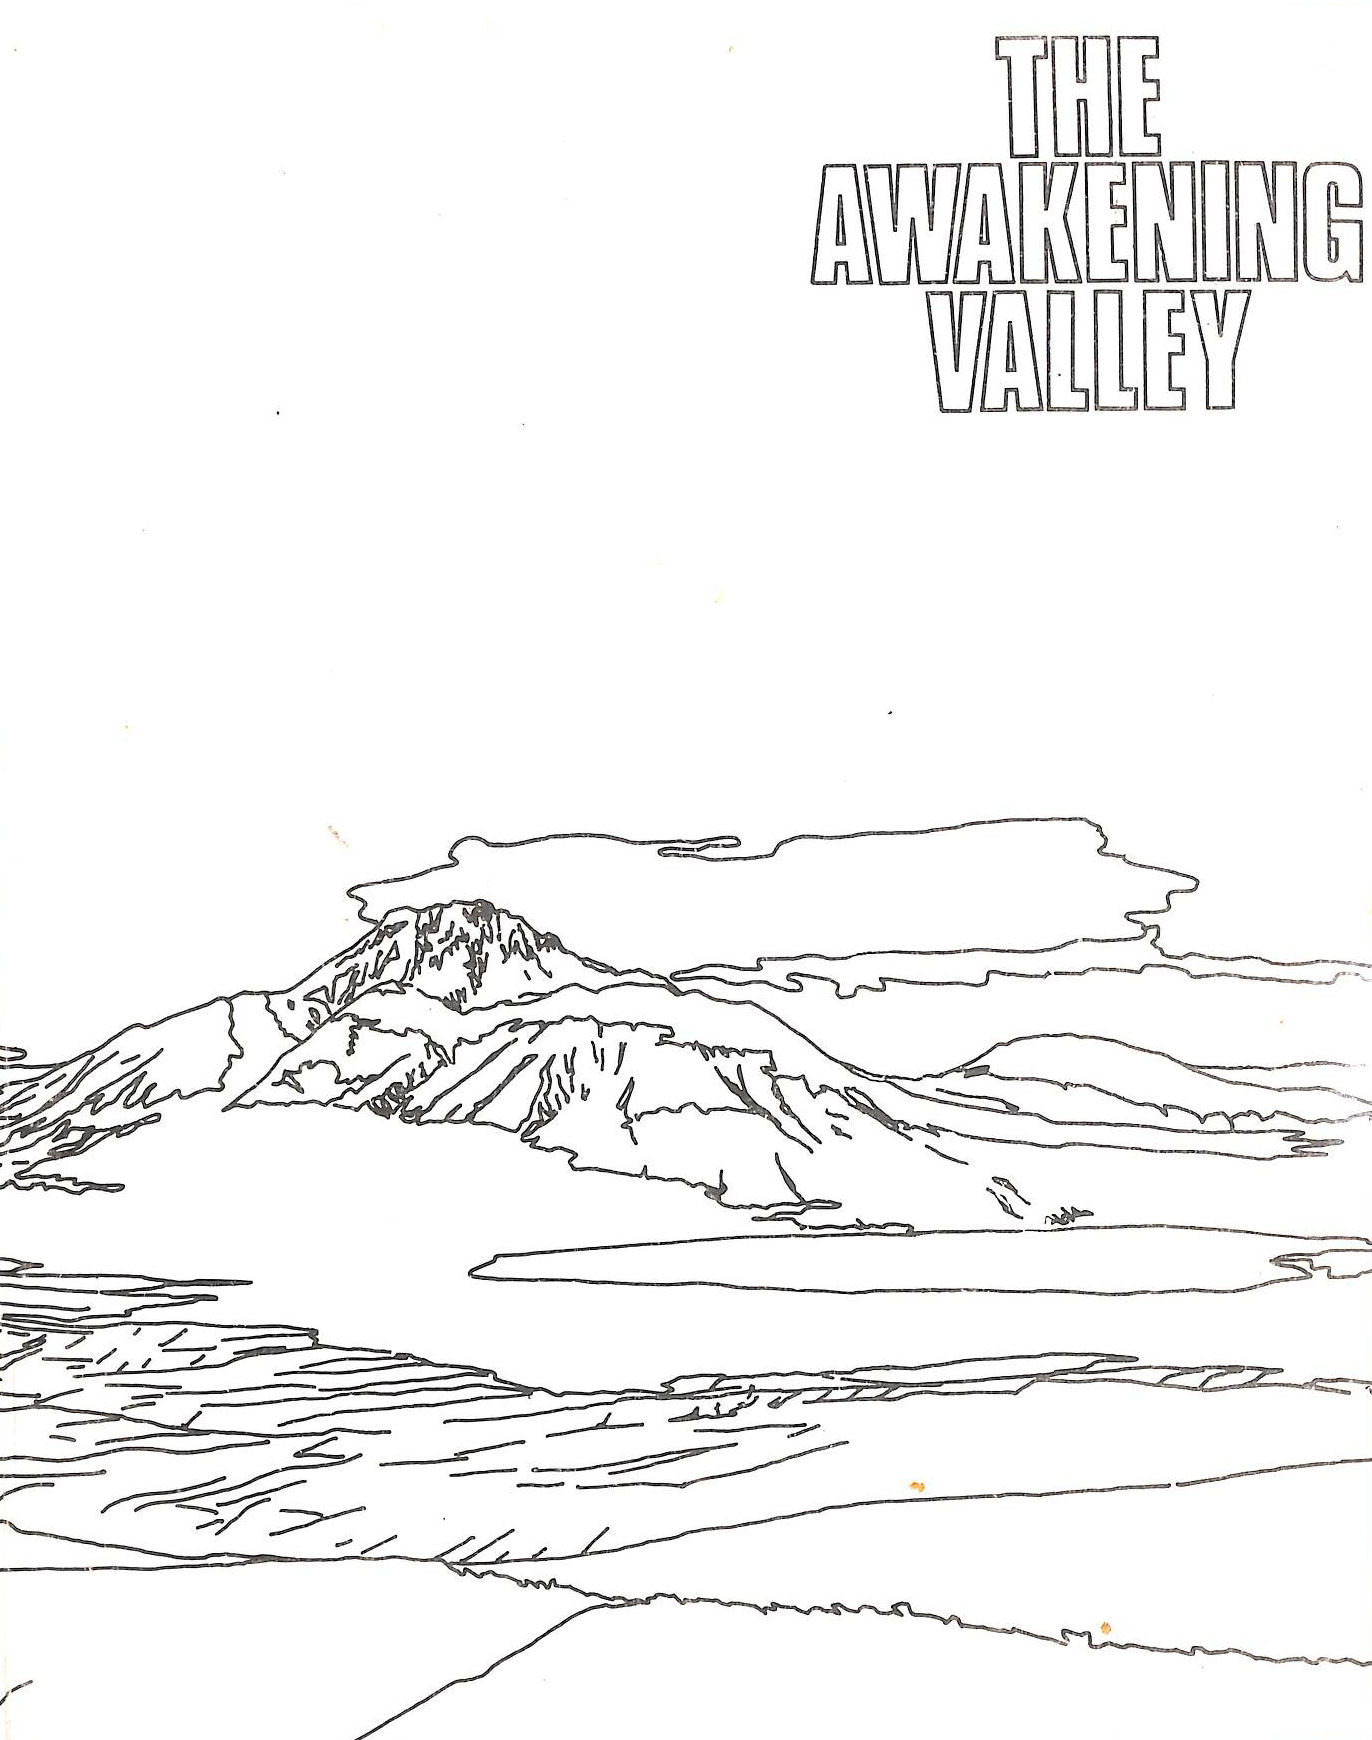 COLLIER, JOHN - The awakening valley